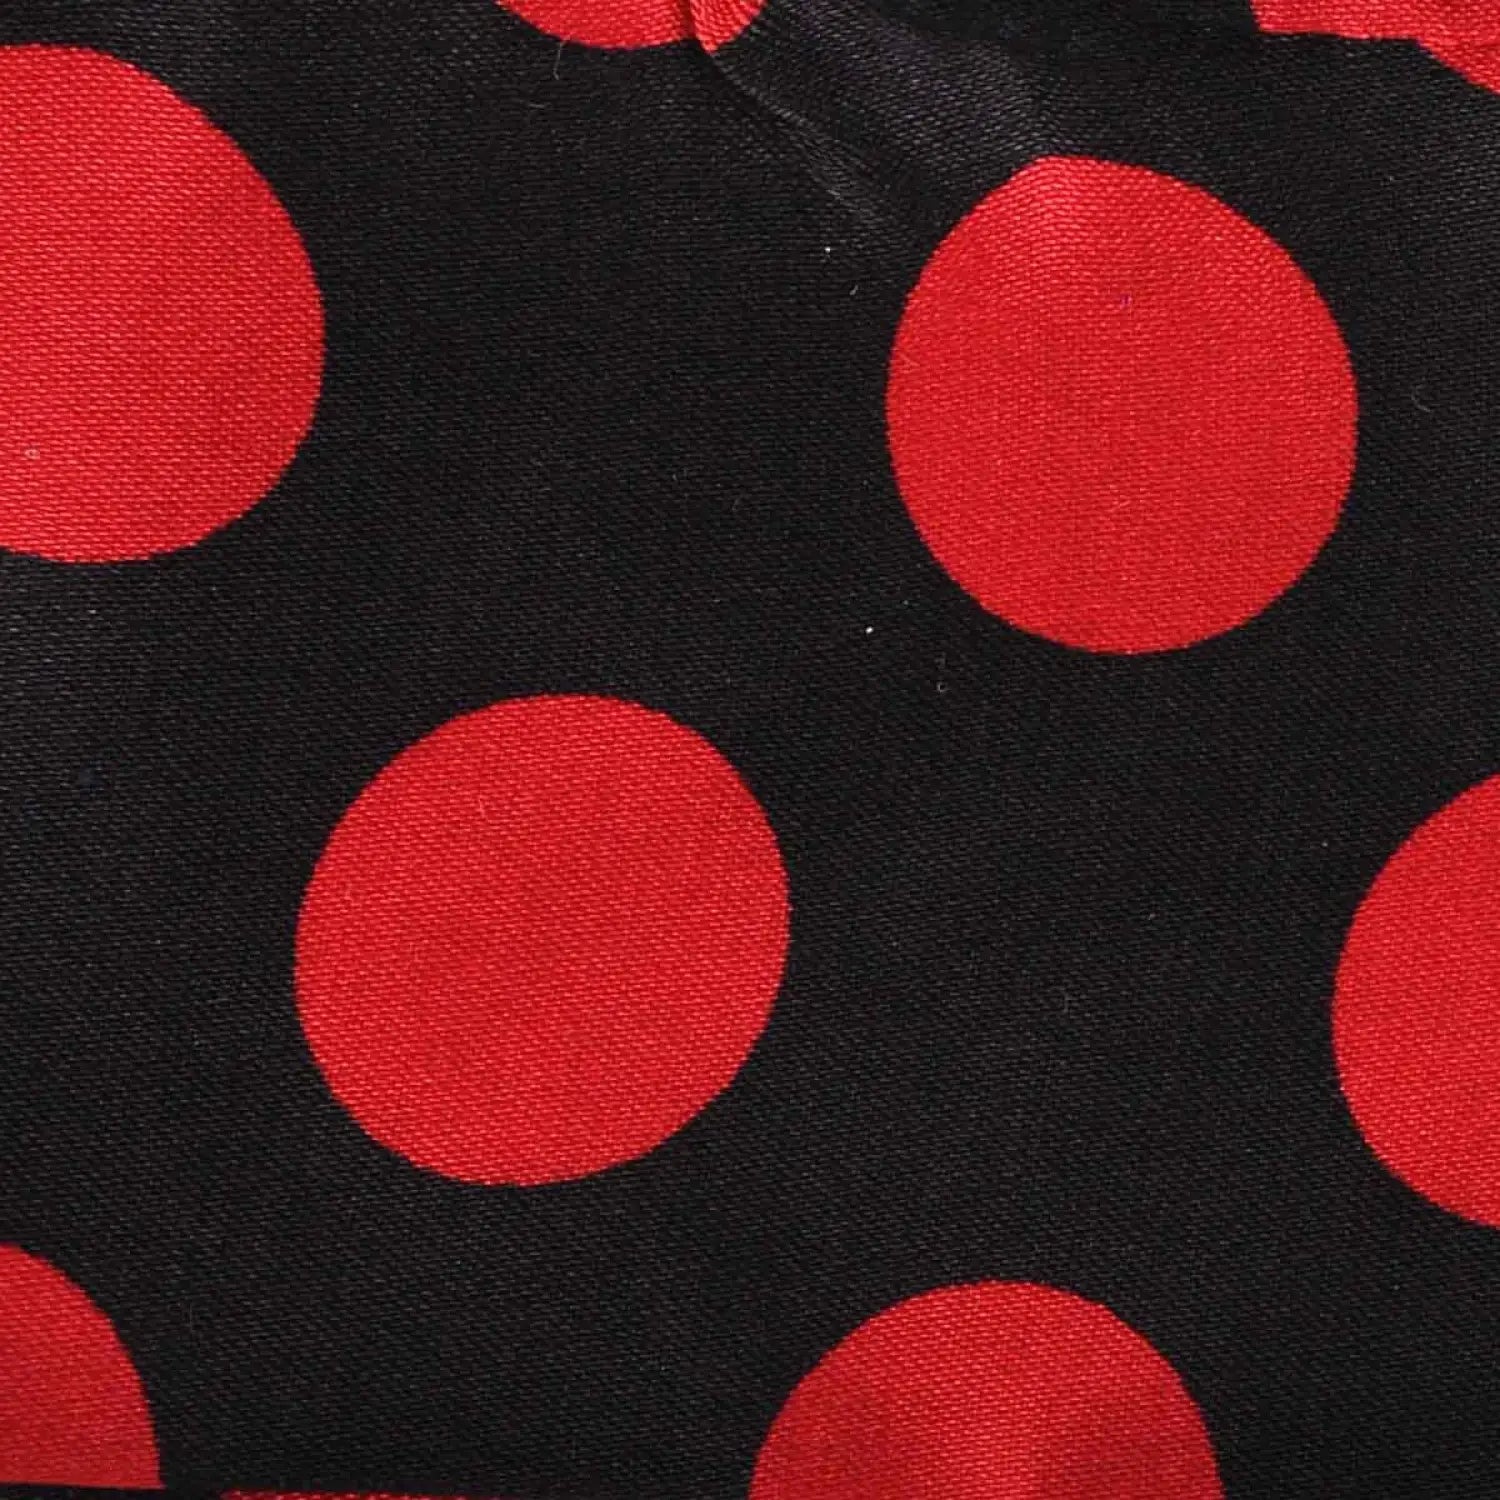 Red and black polka dot satin sash scarf and hair pin set fabric display